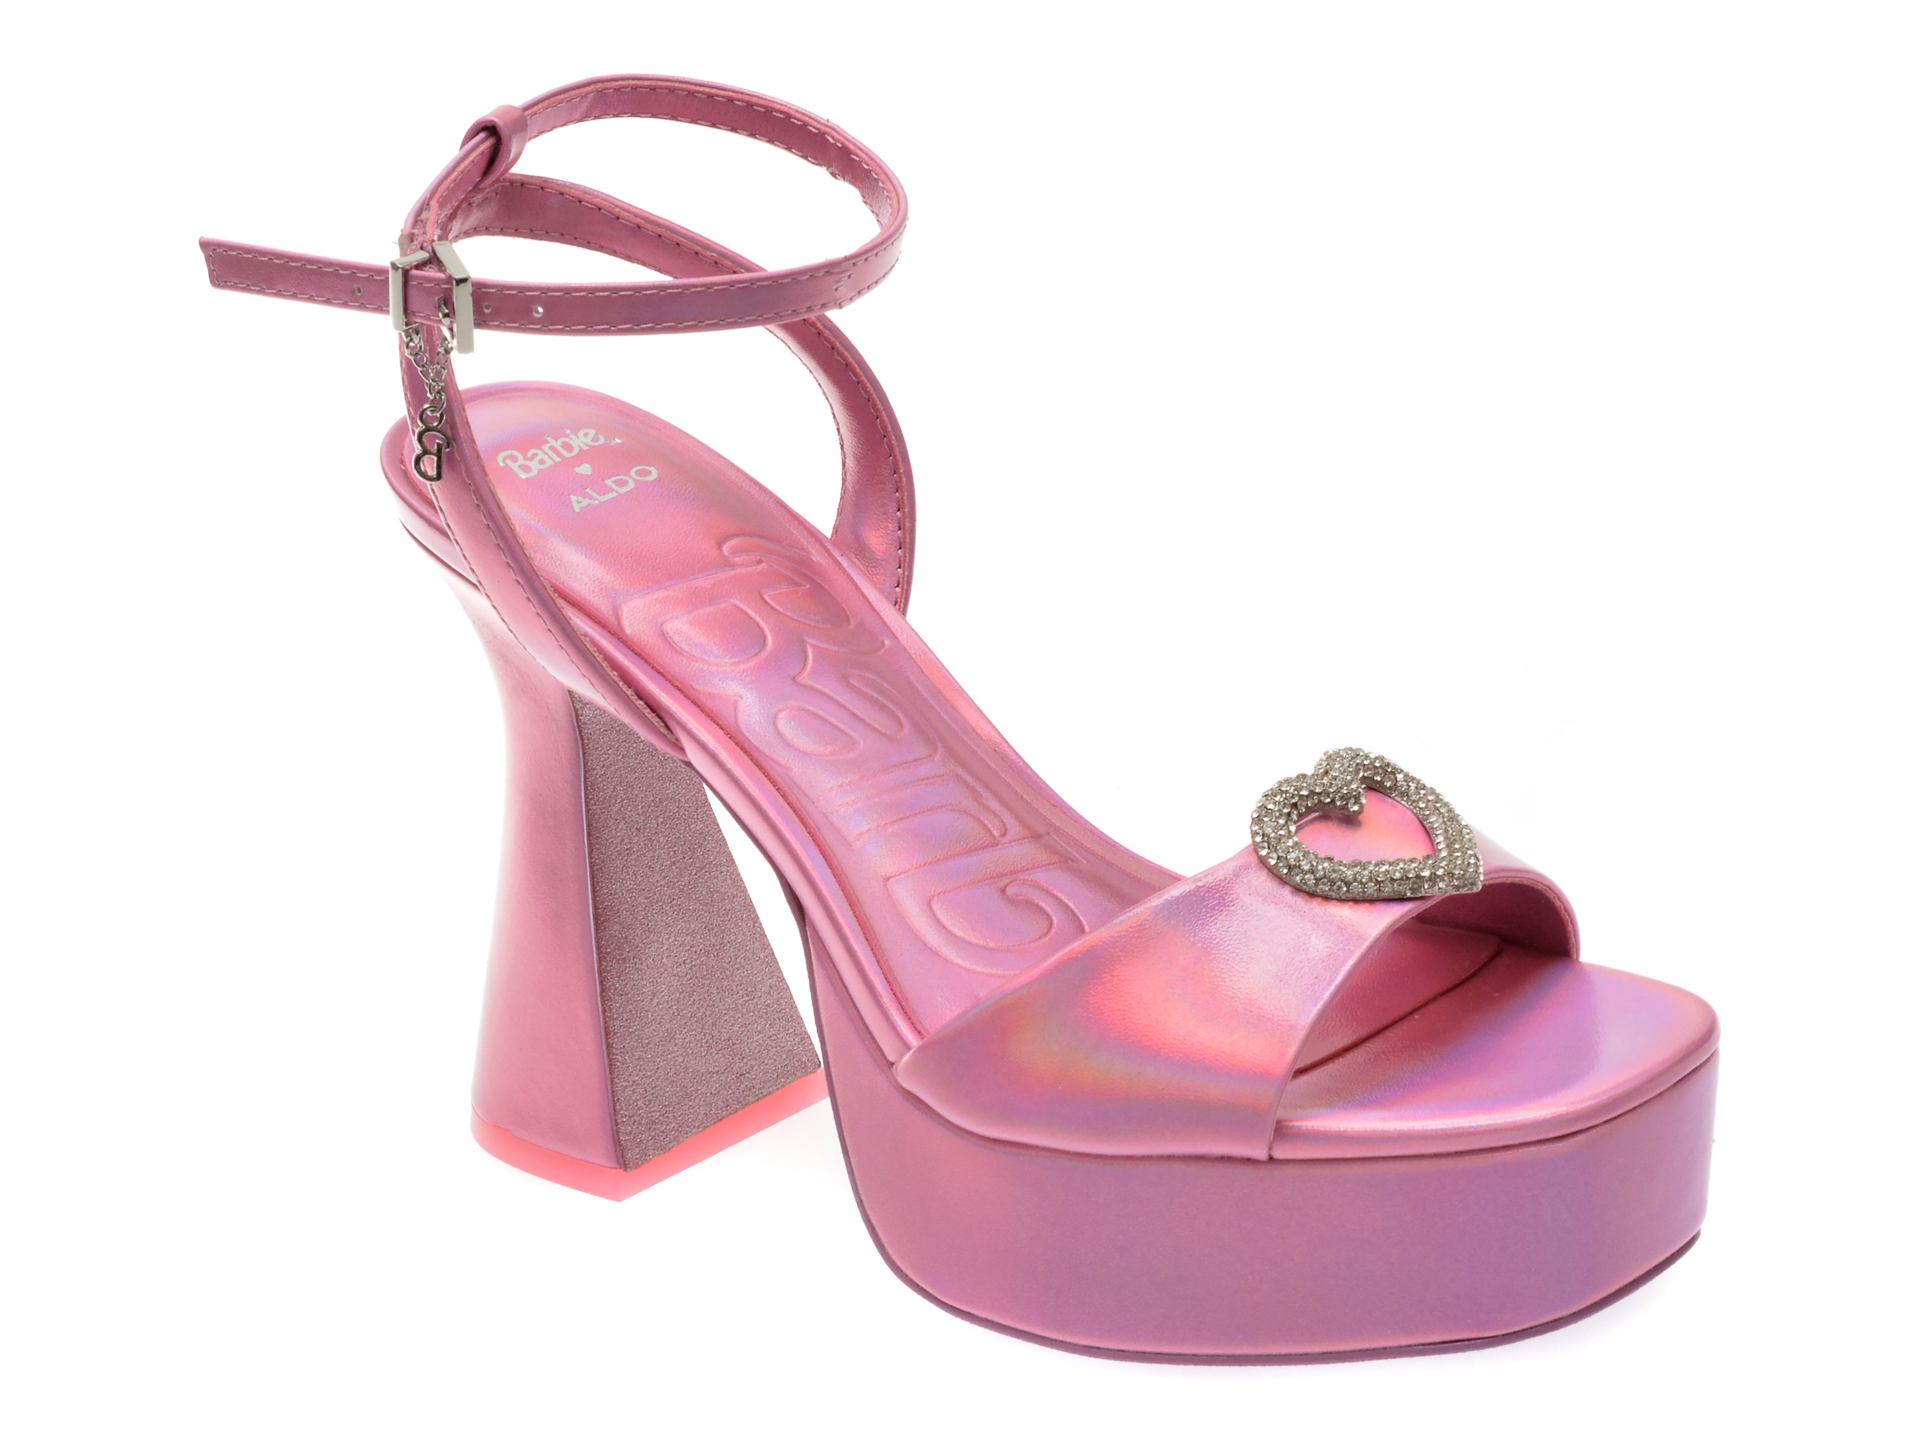 Sandale elegante ALDO roz, 13824201, din piele ecologica